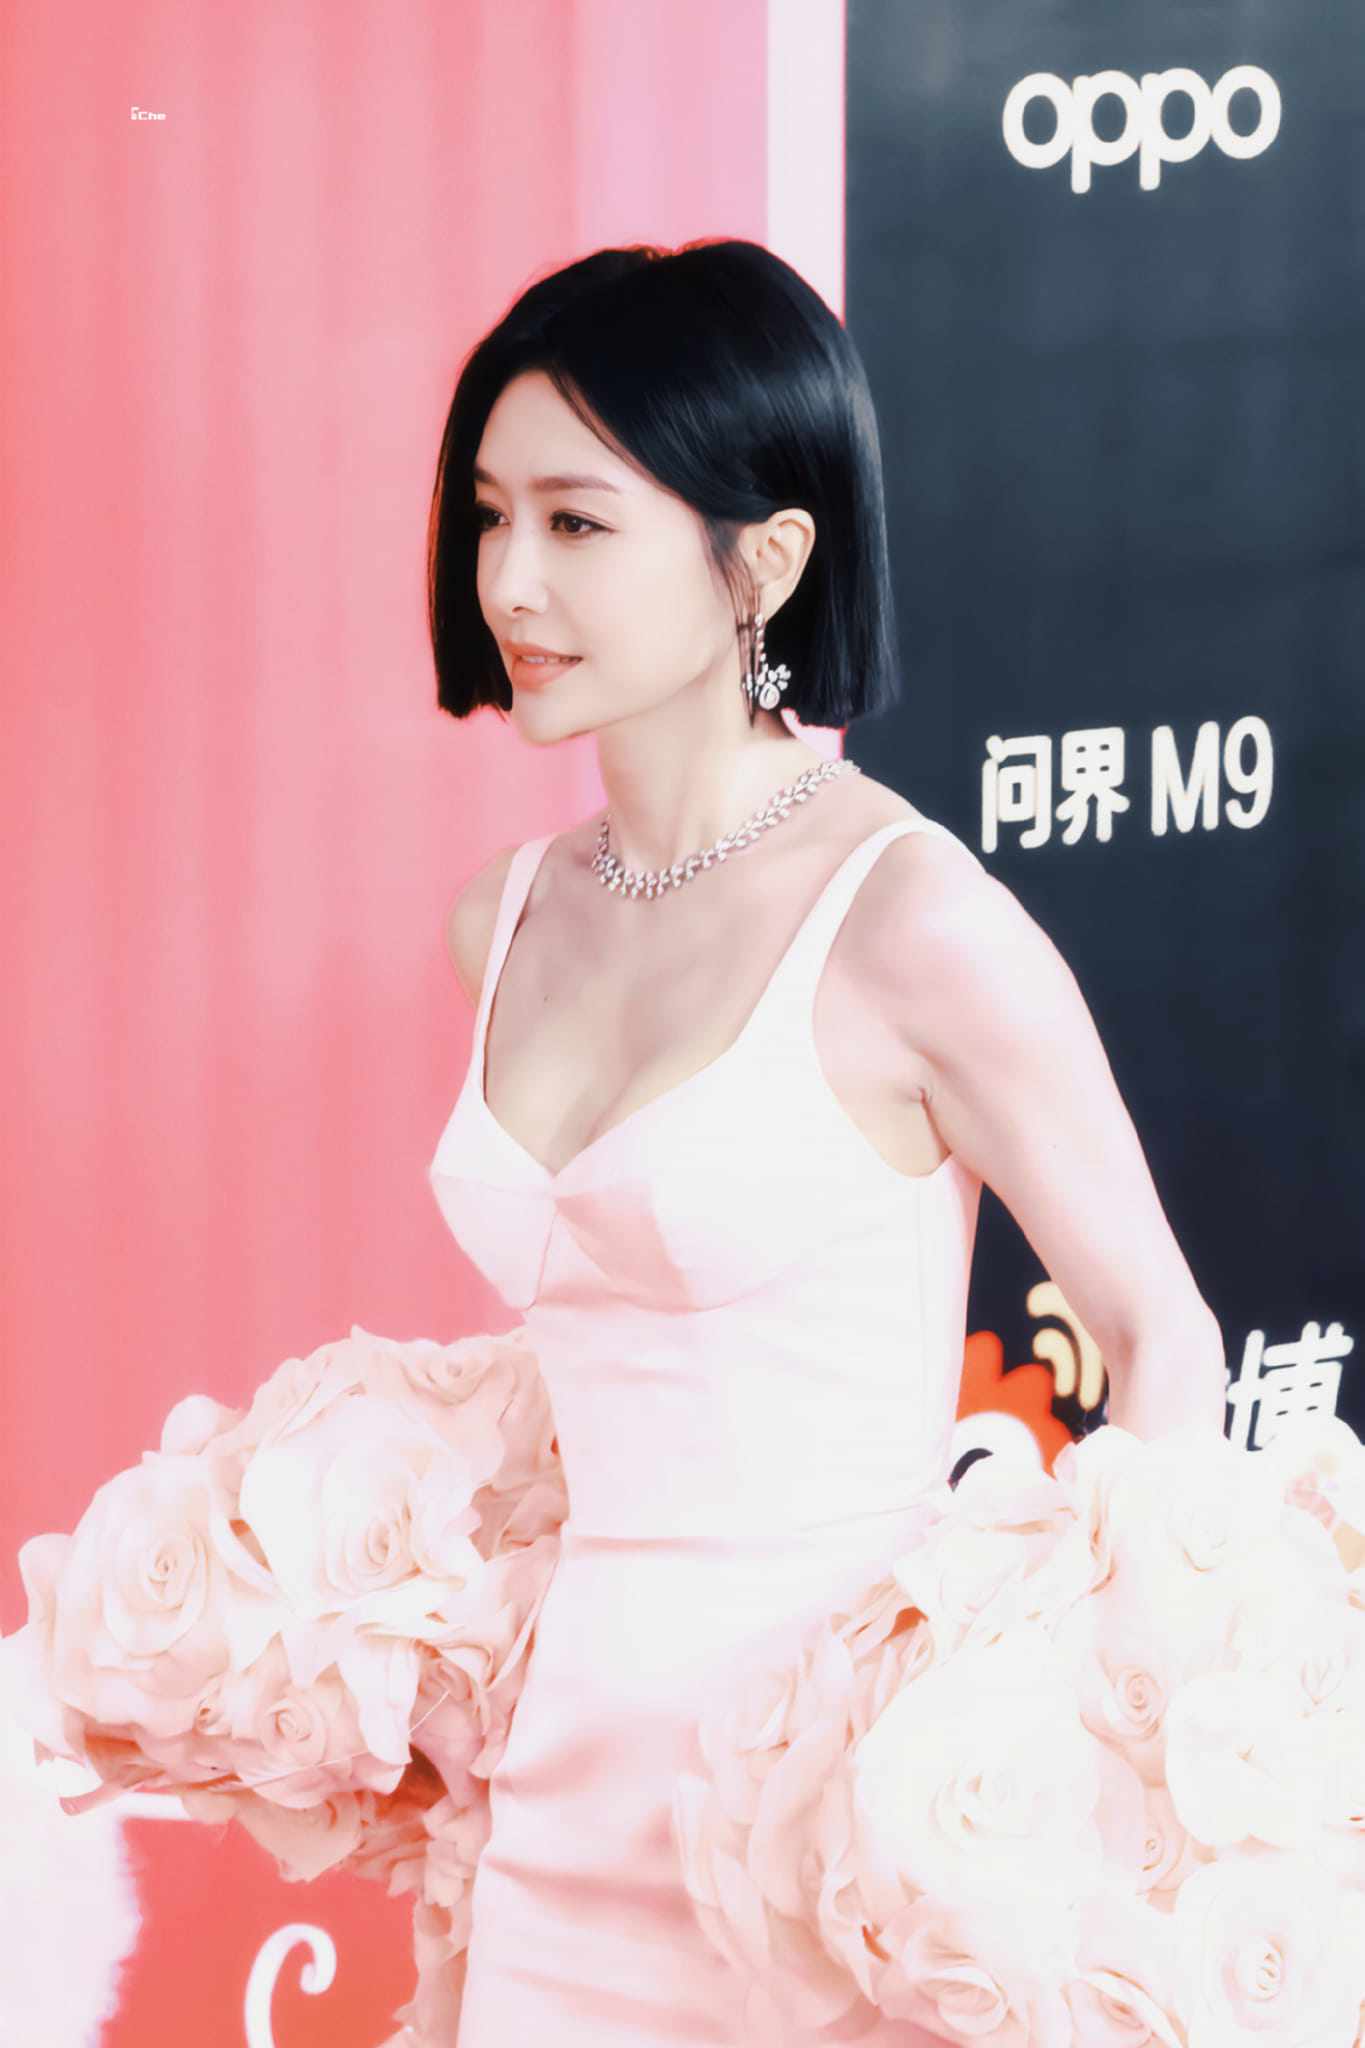 Vốn sở hữu làn da trắng mịn, Tần Lam không kén các mẫu đầm có màu sắc tươi sáng như trắng, hồng, vàng,...